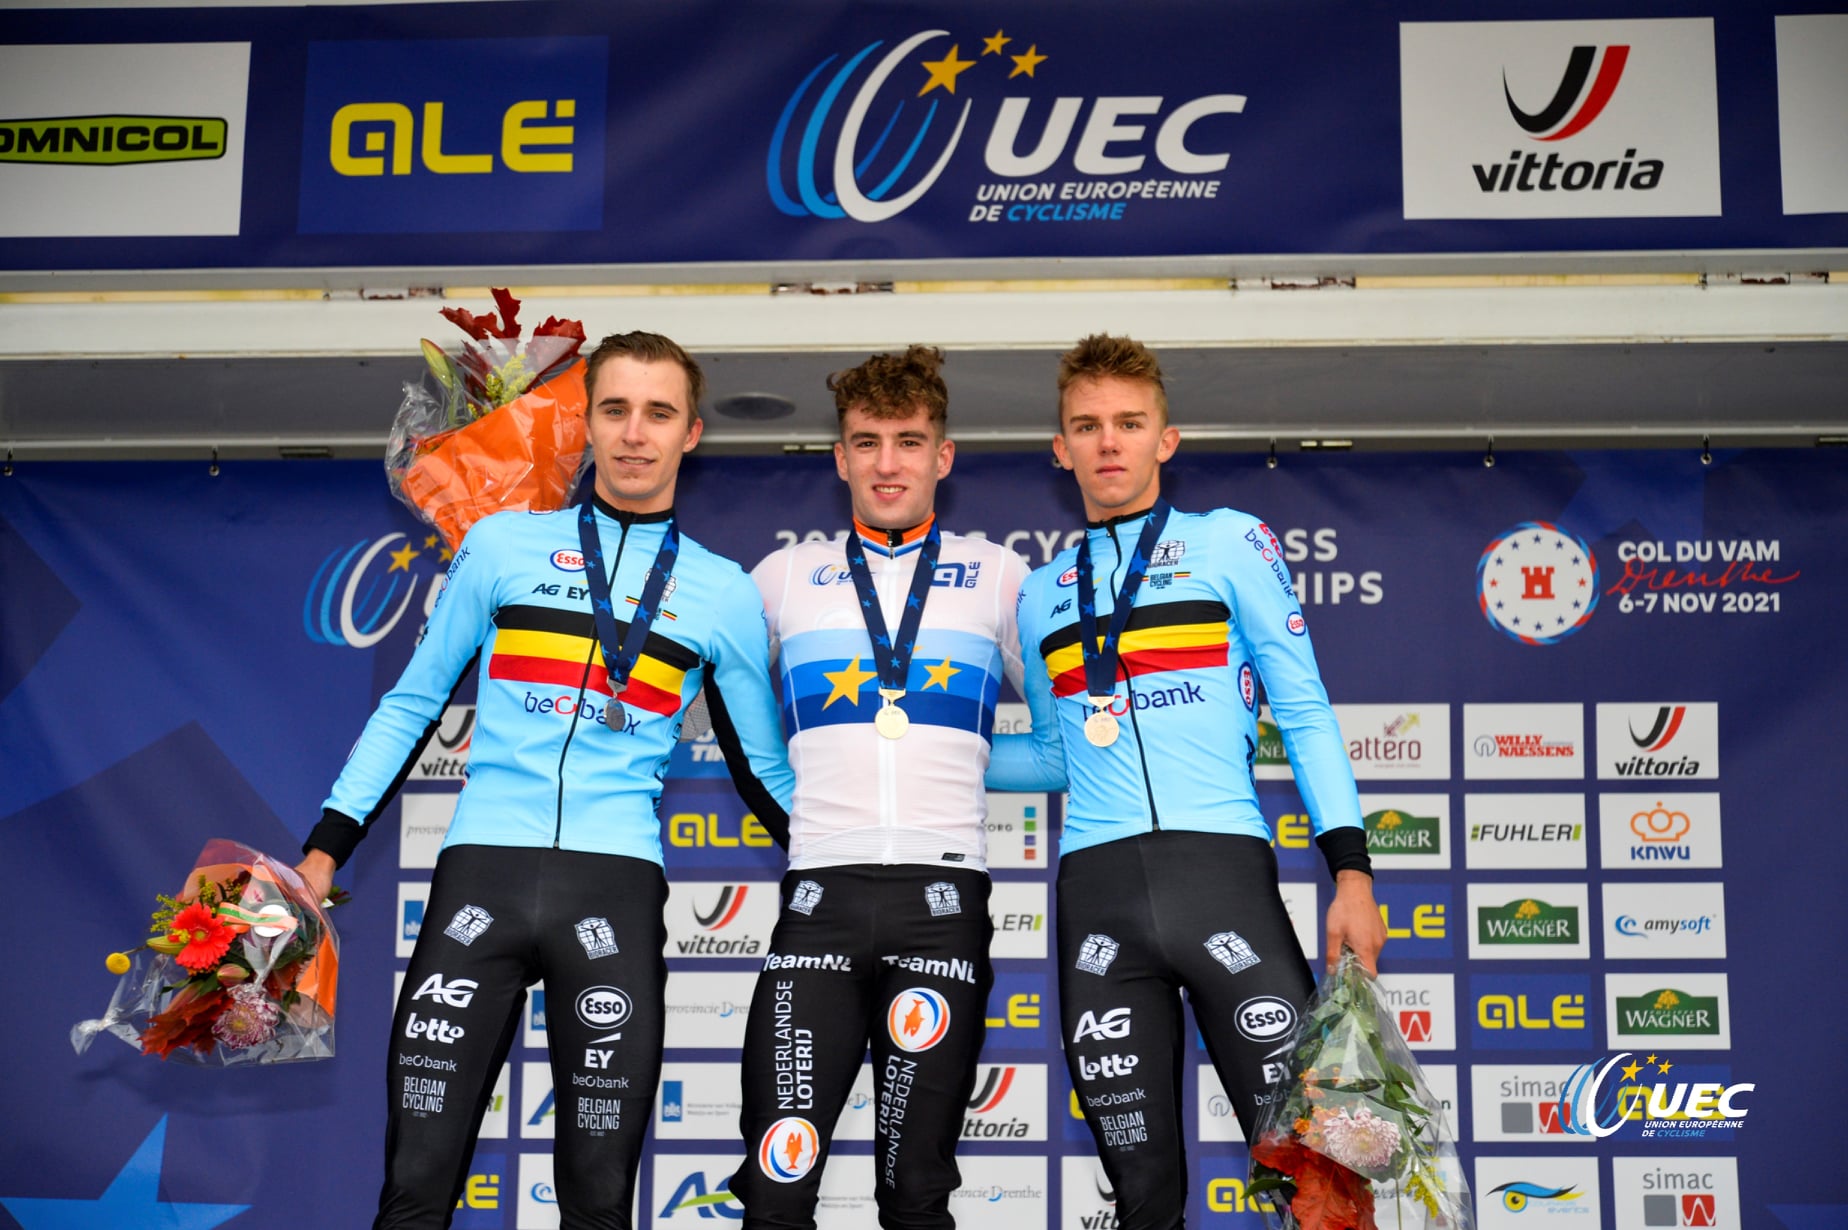 Il podio del Campionato Europeo ciclocross Under 23 2021 a Col du Vam (foto UEC/BettiniPhoto)